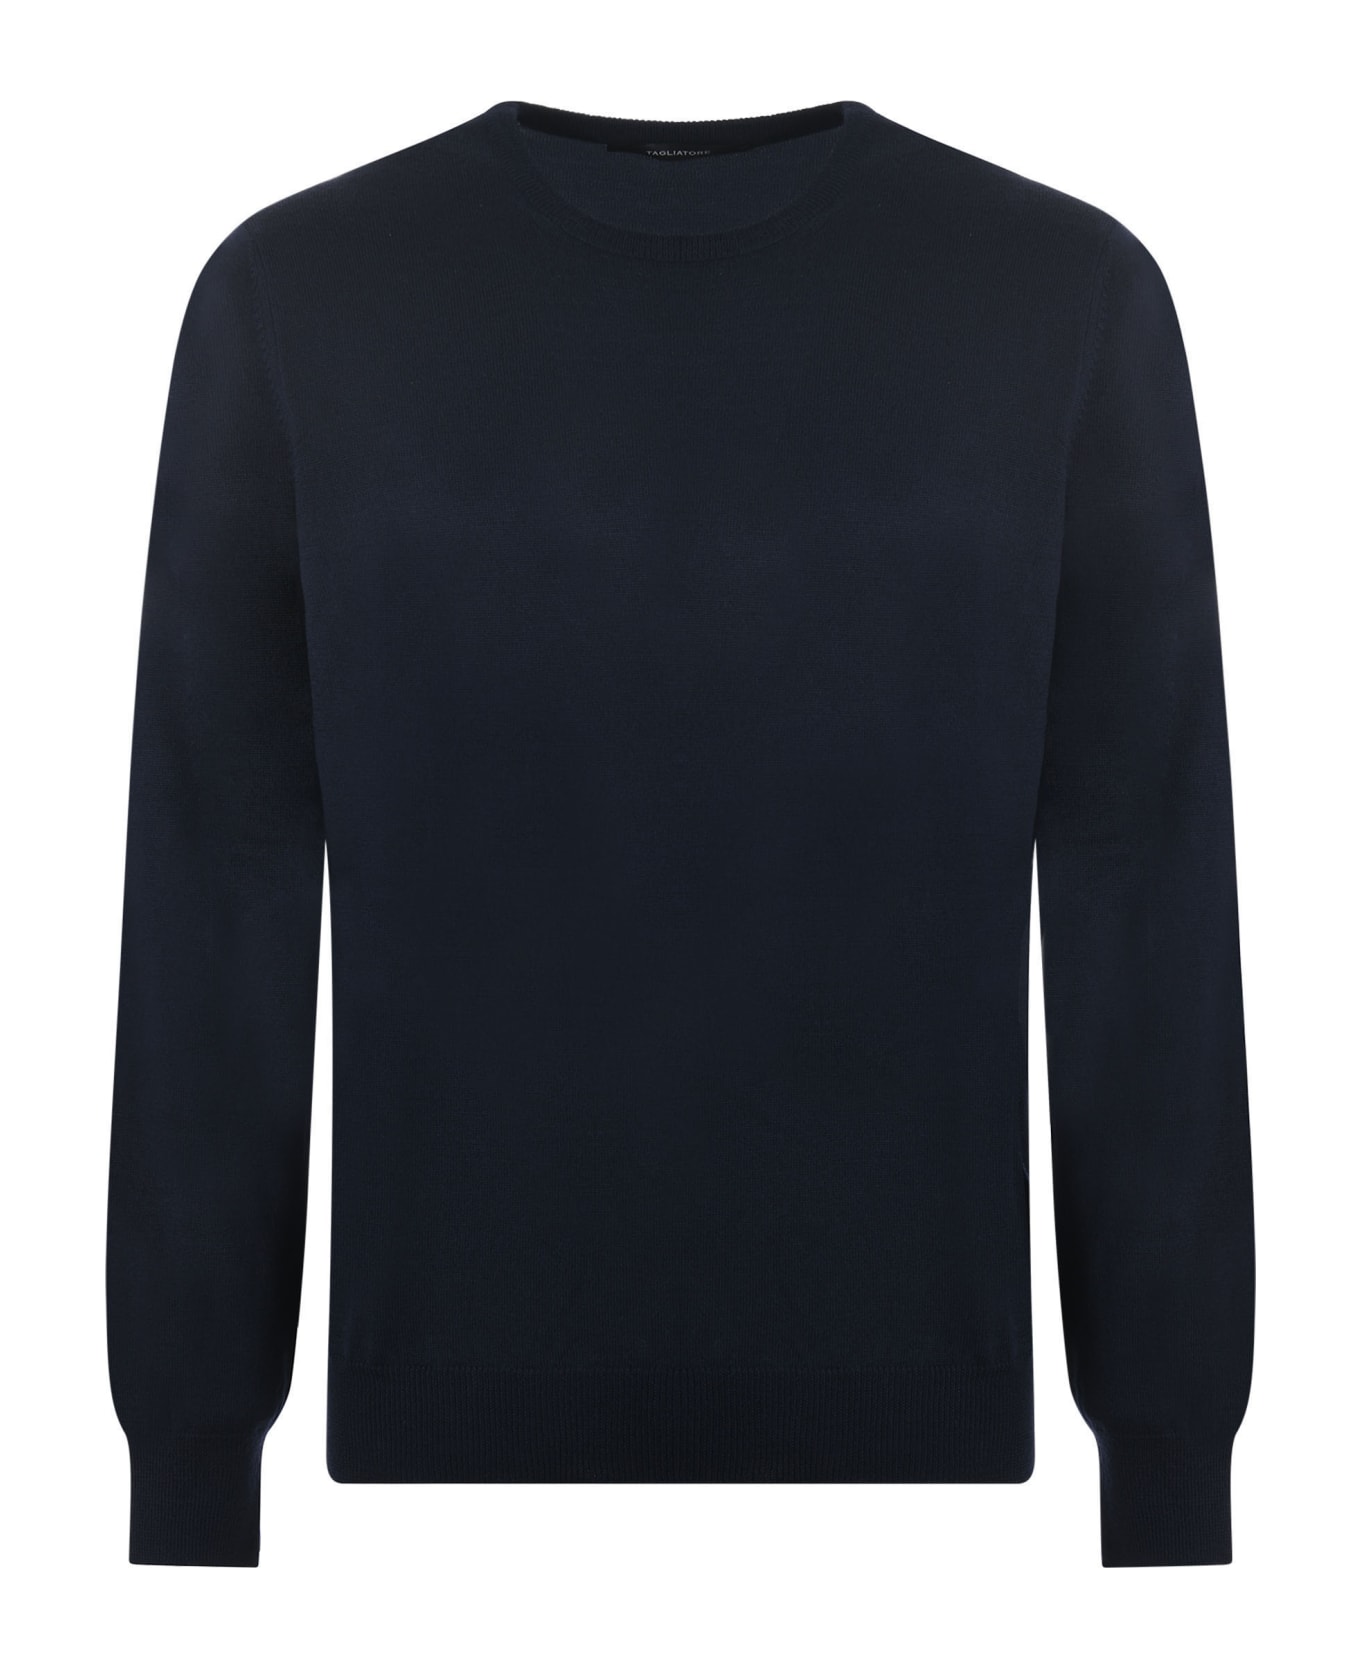 Tagliatore Round Neck Sweater - Blu scuro ニットウェア